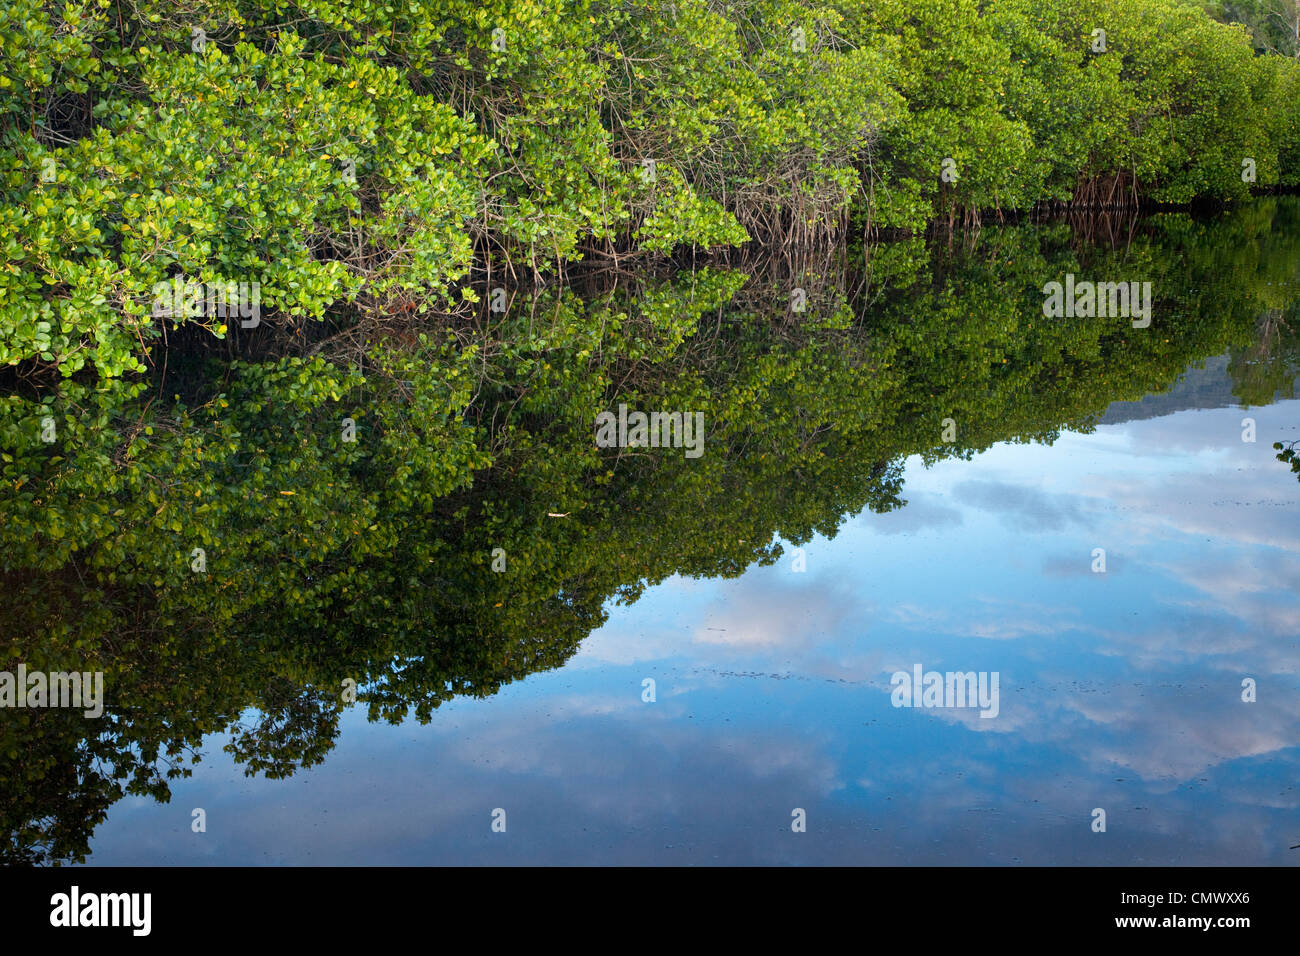 Voie d'eau bordée de mangroves. Kewarra Beach, Cairns, Queensland, Australie Banque D'Images